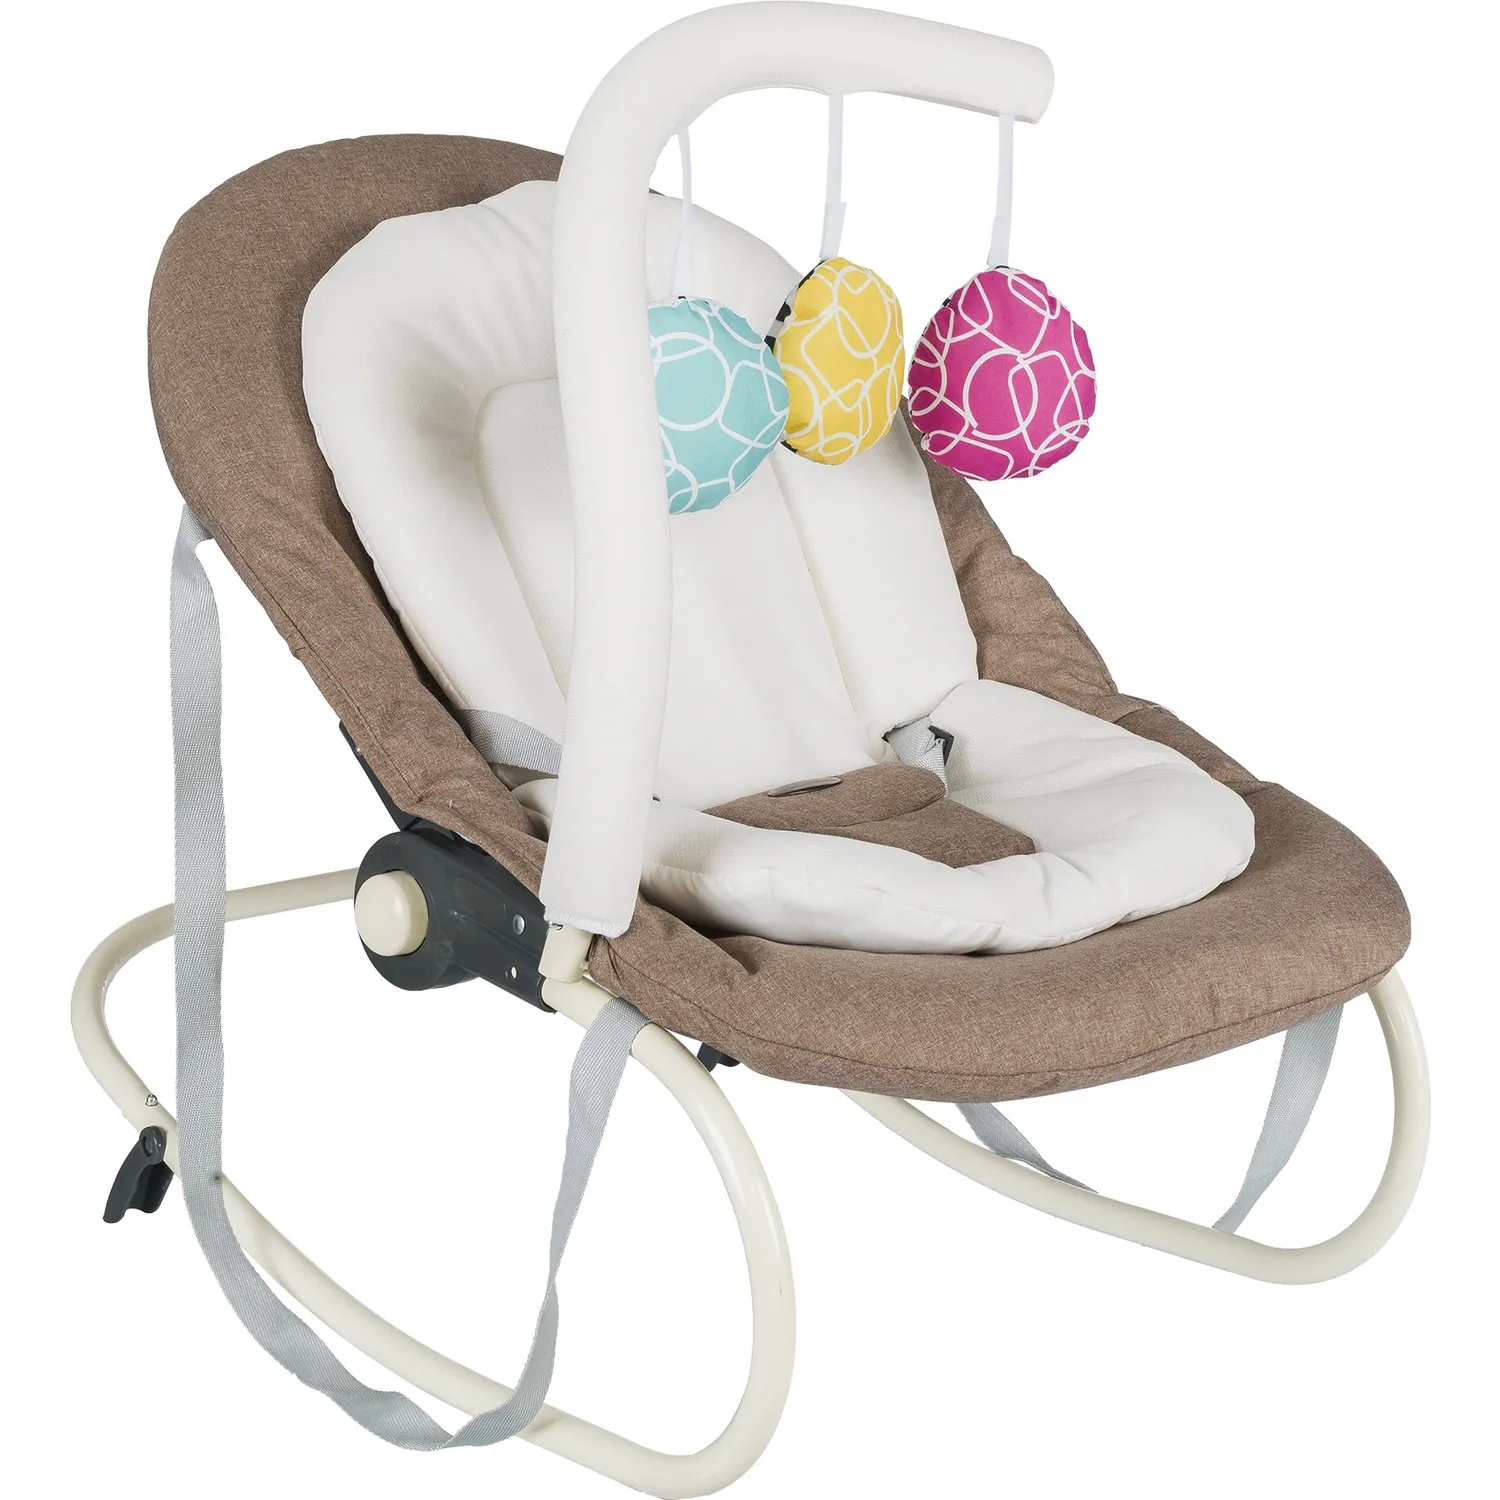 MYbaby Maria Lüx Oyuncaklı Ana Kucağı Bebek sallanan sandalye yenidoğan beşiği bebek uyku sepeti sallanan sandalye